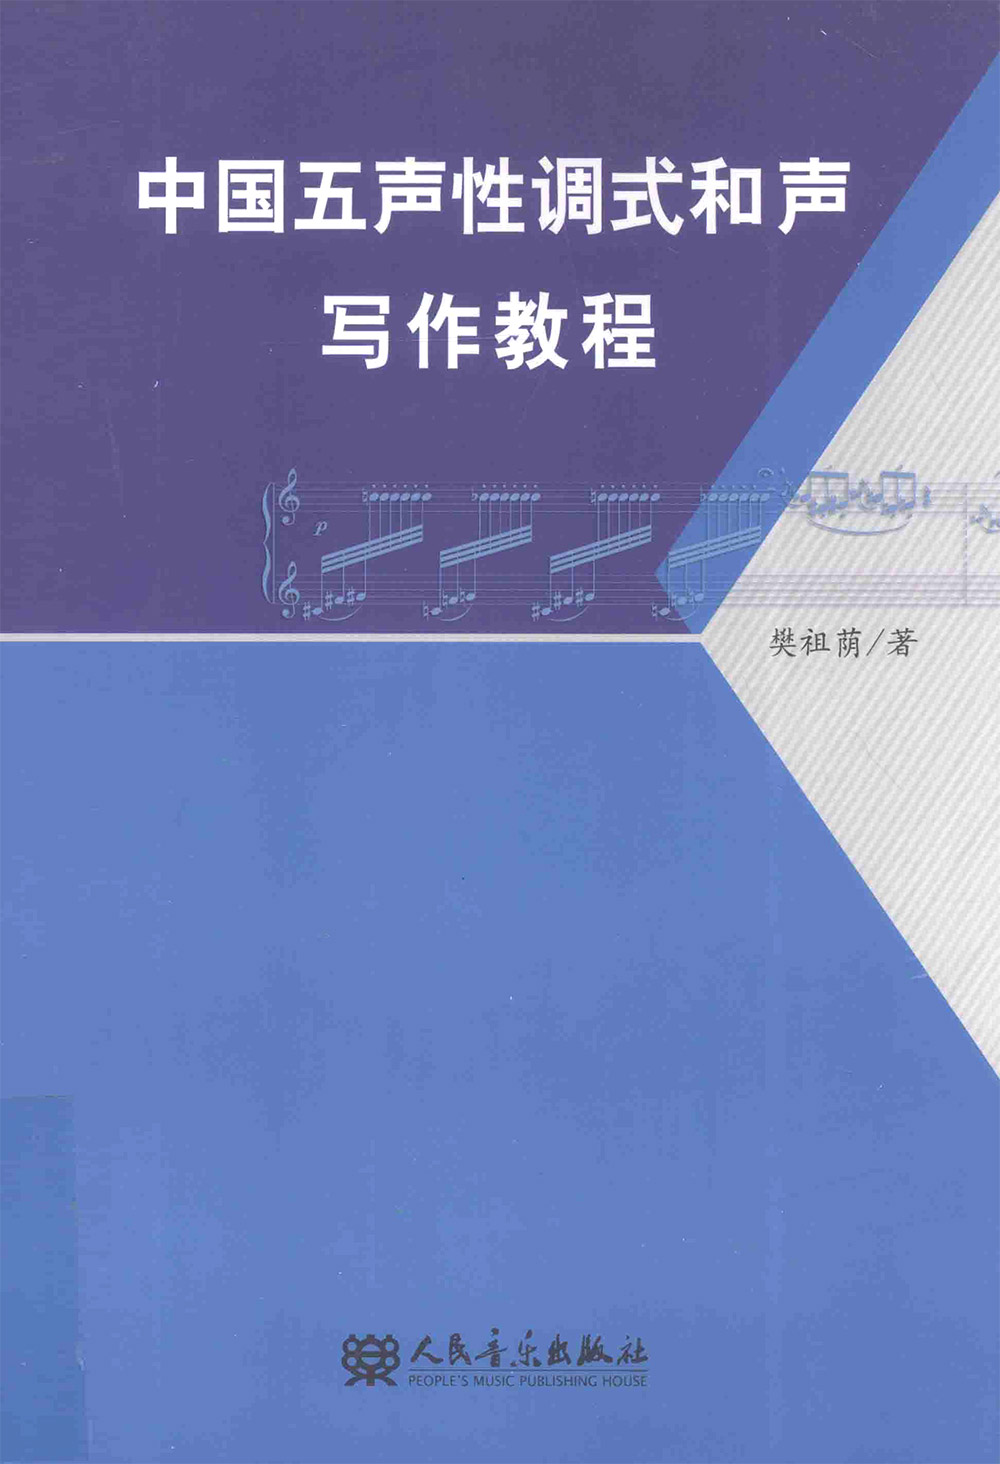 中国五声性调式和声写作教程樊祖荫[PDF]（51.5MB） - MidiVst | 音源网